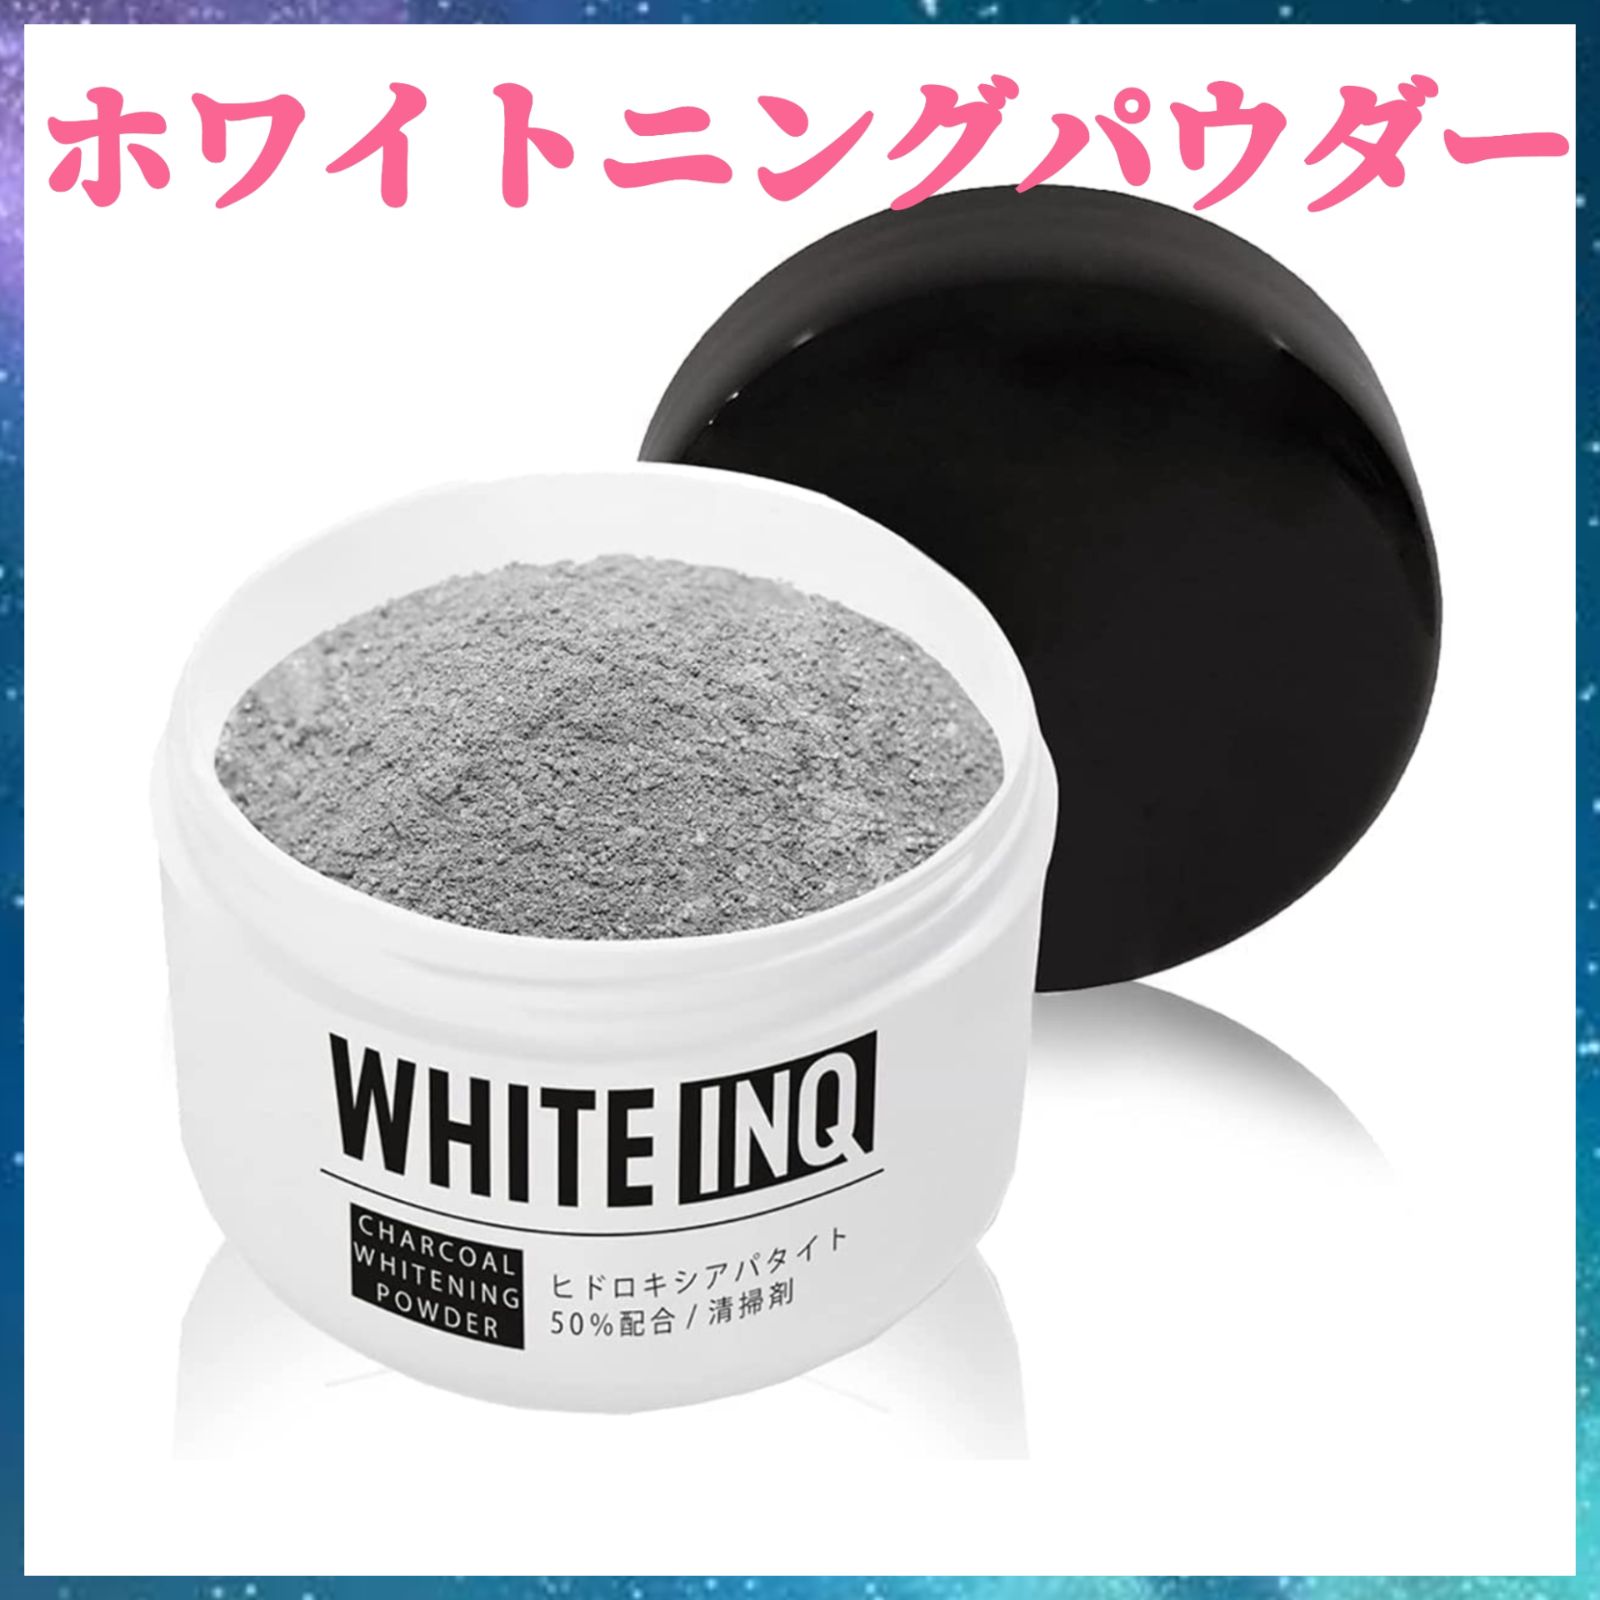 WHITE-INQ / 竹炭 ホワイトニングパウダー 30gの公式商品情報